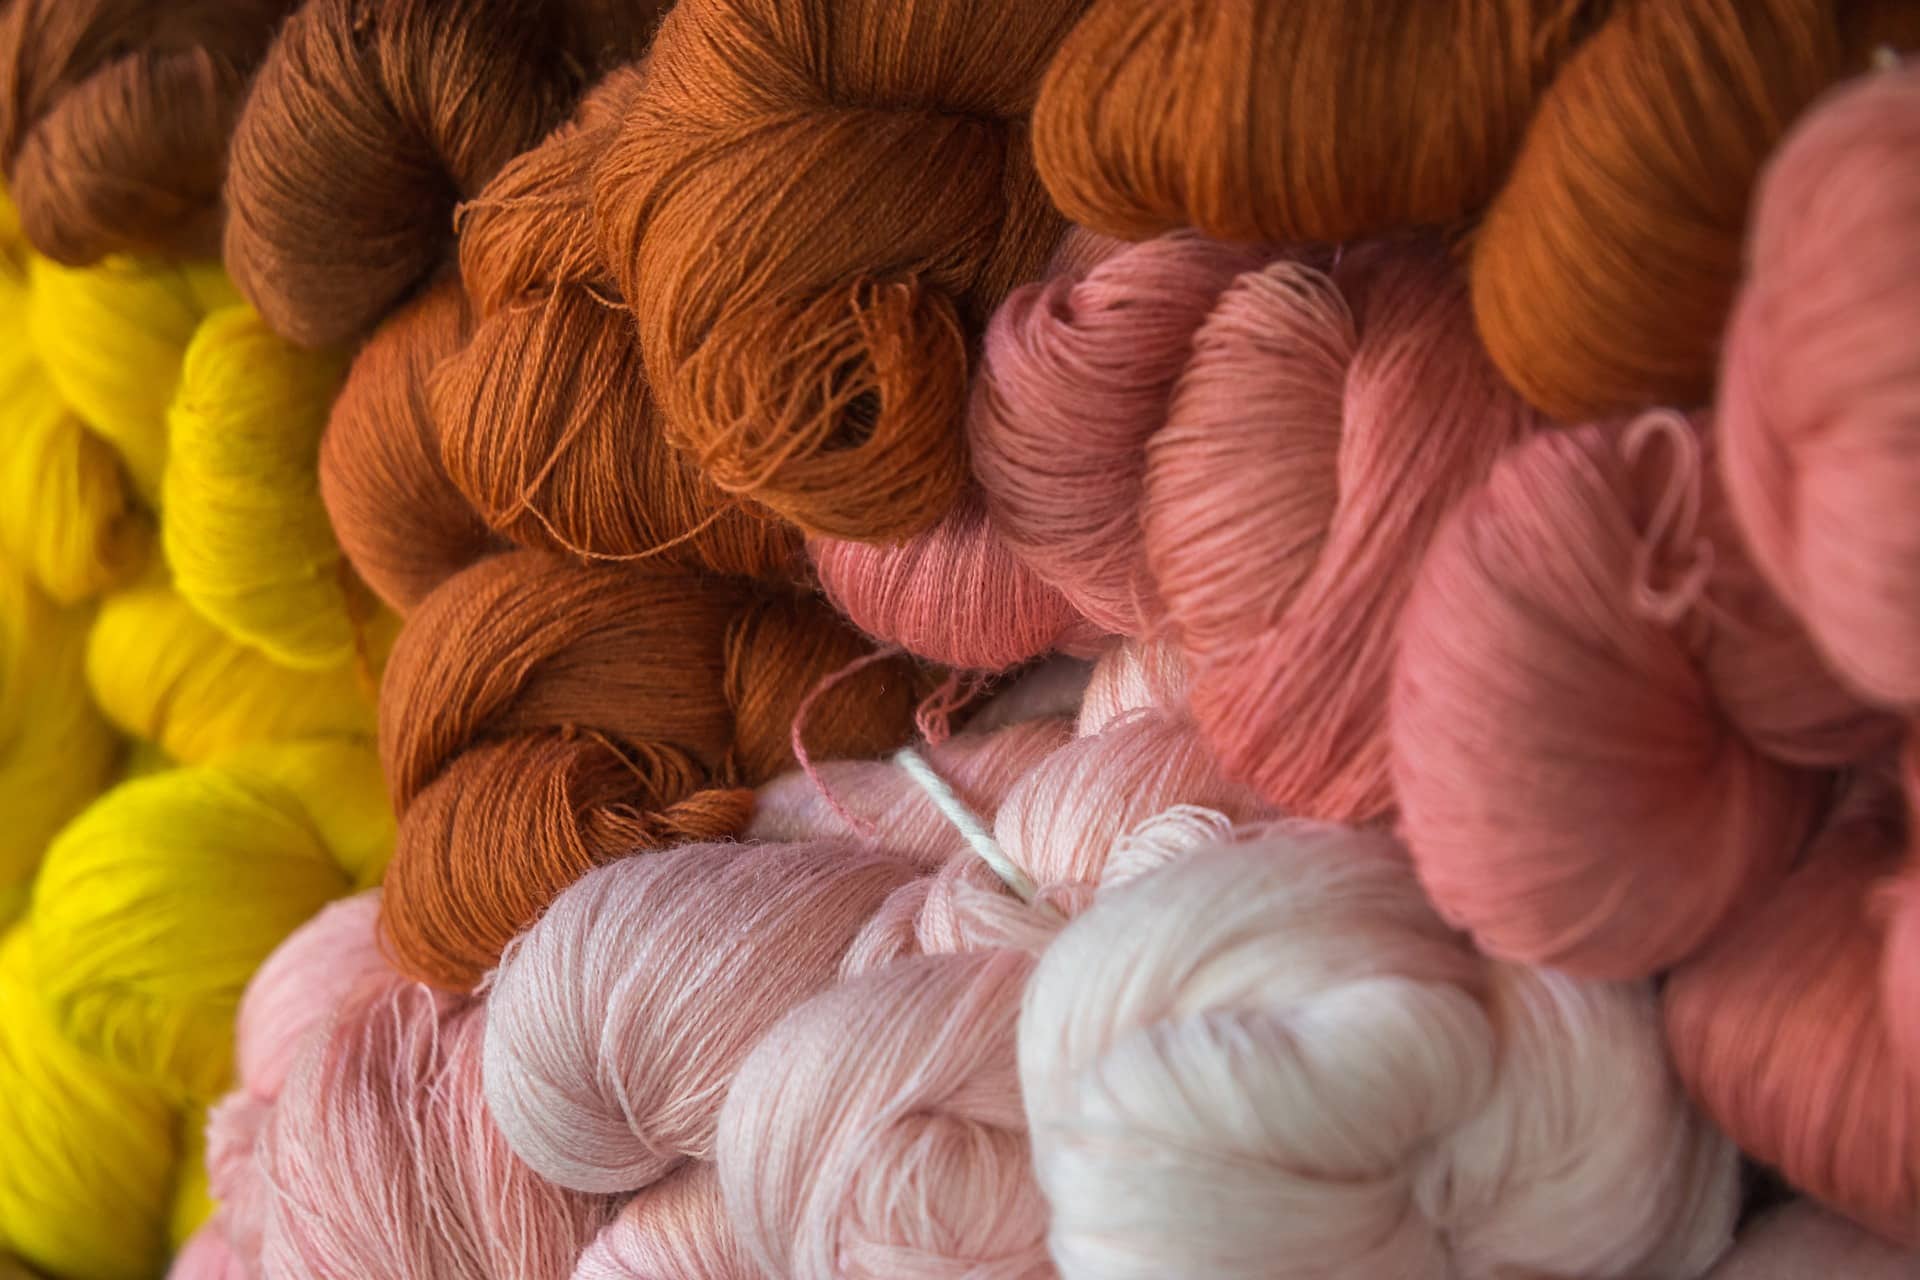 Fil coton pour crochet ou tricot - Grand choix en ligne